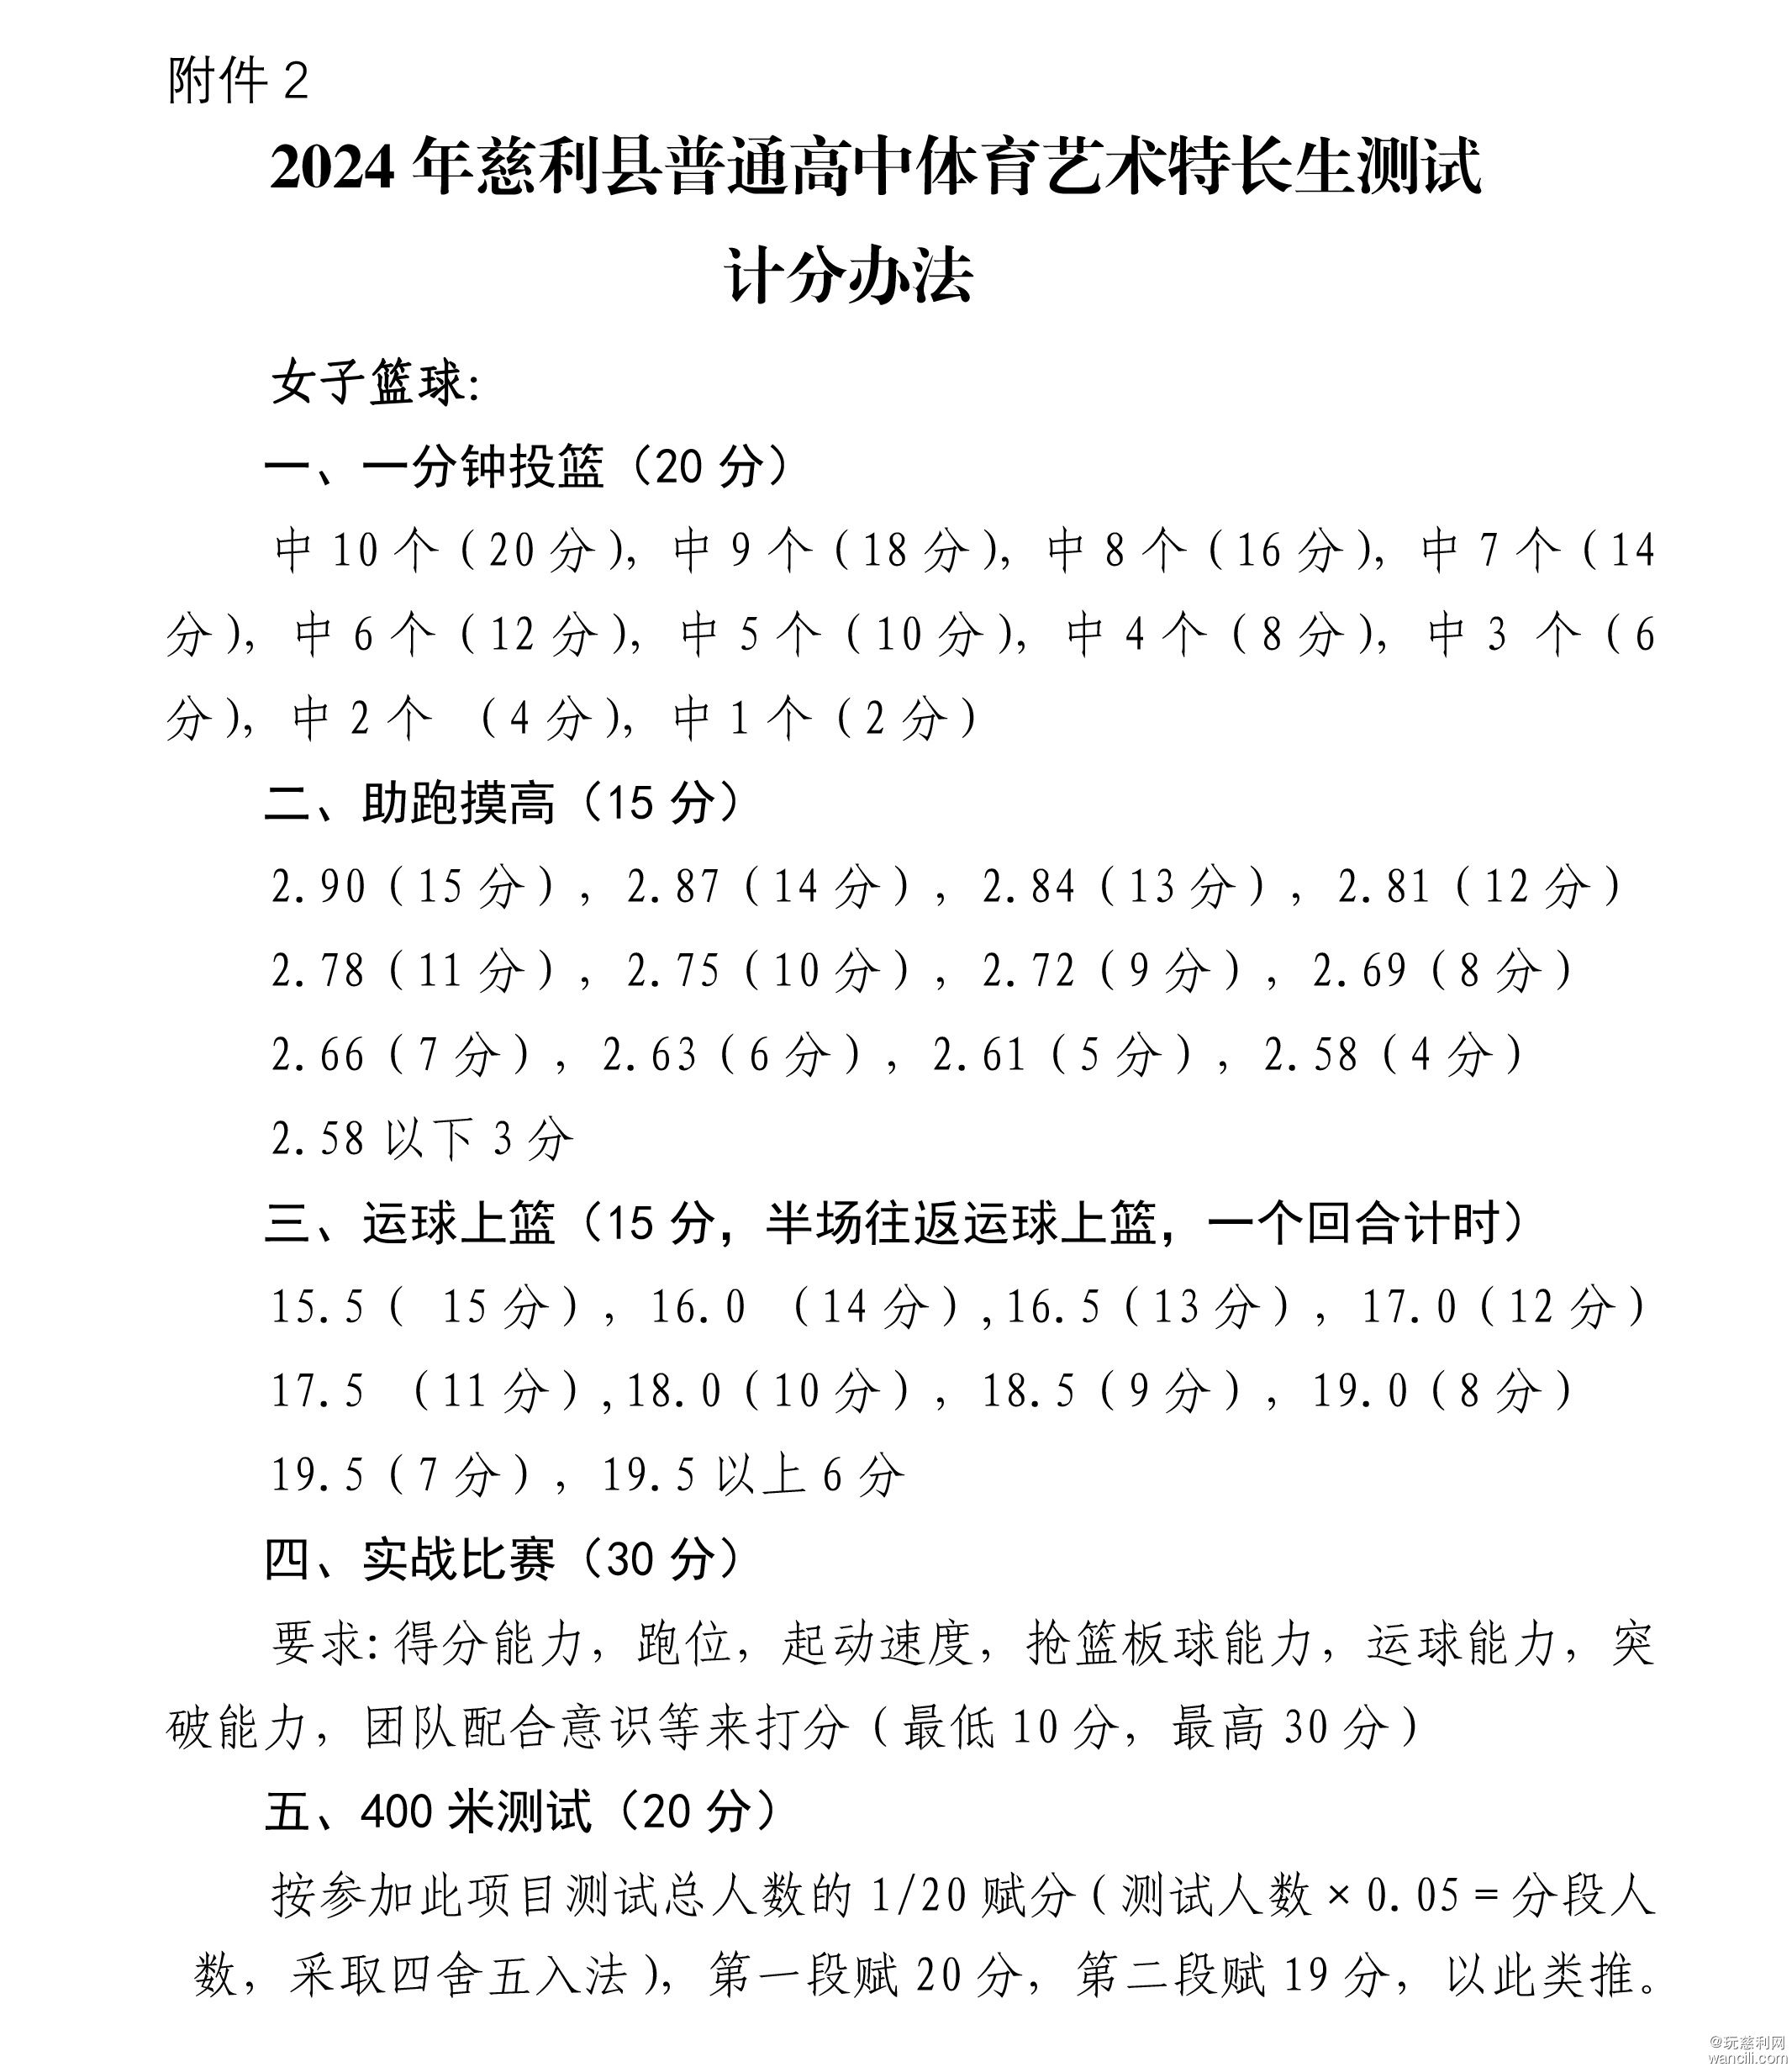 慈利县2024年普通高中体育艺术特长生招考工作方案-9_03.jpg